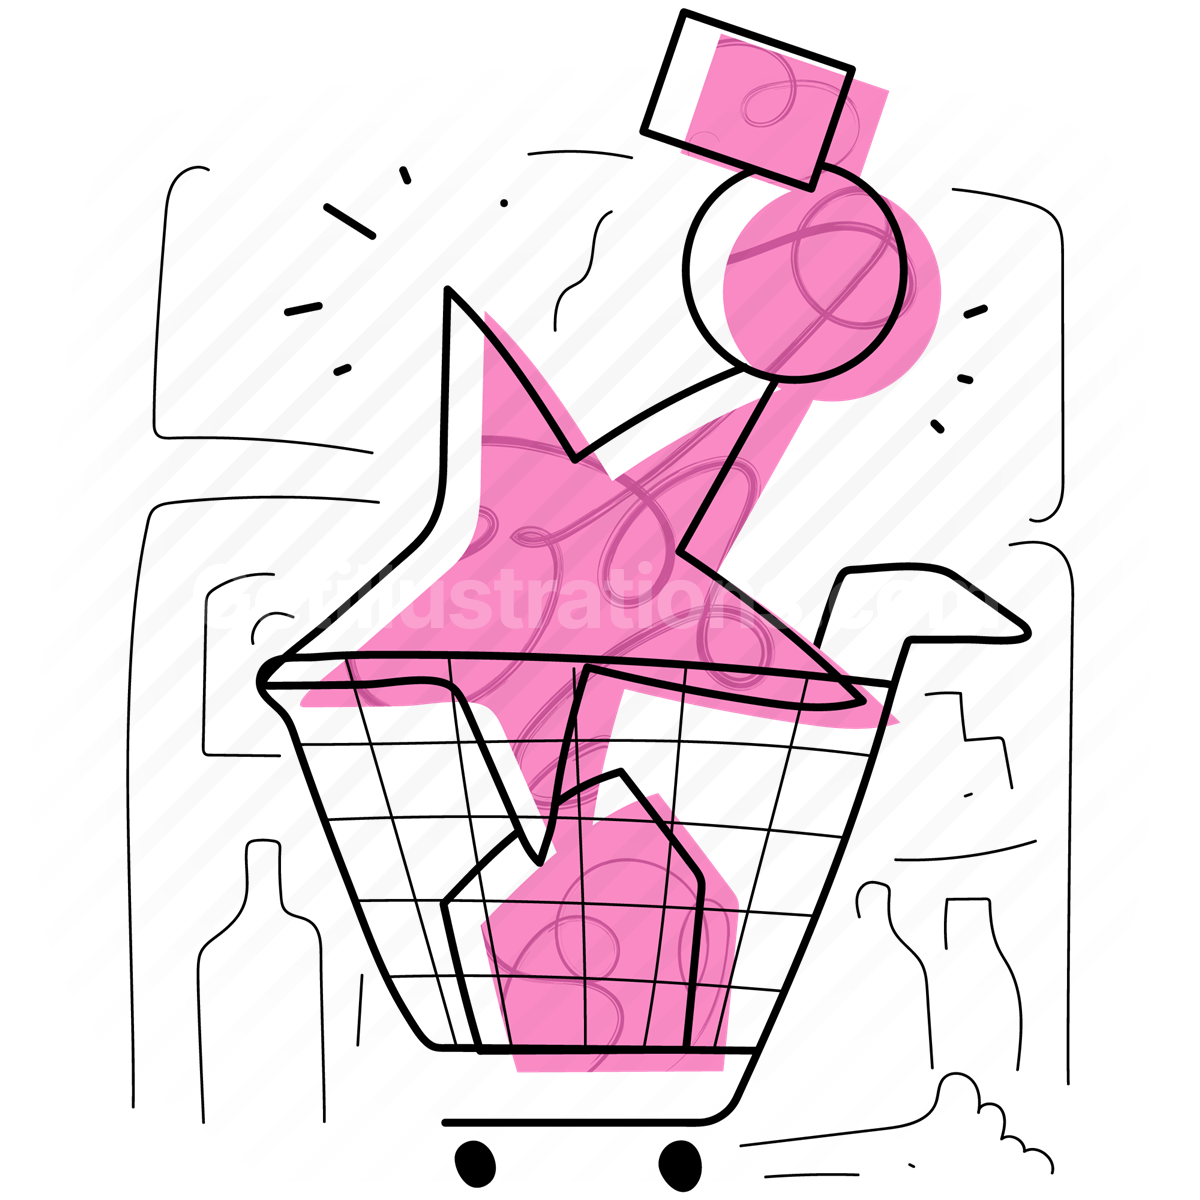 shop, store, order, cart, basket, groceries, commerce